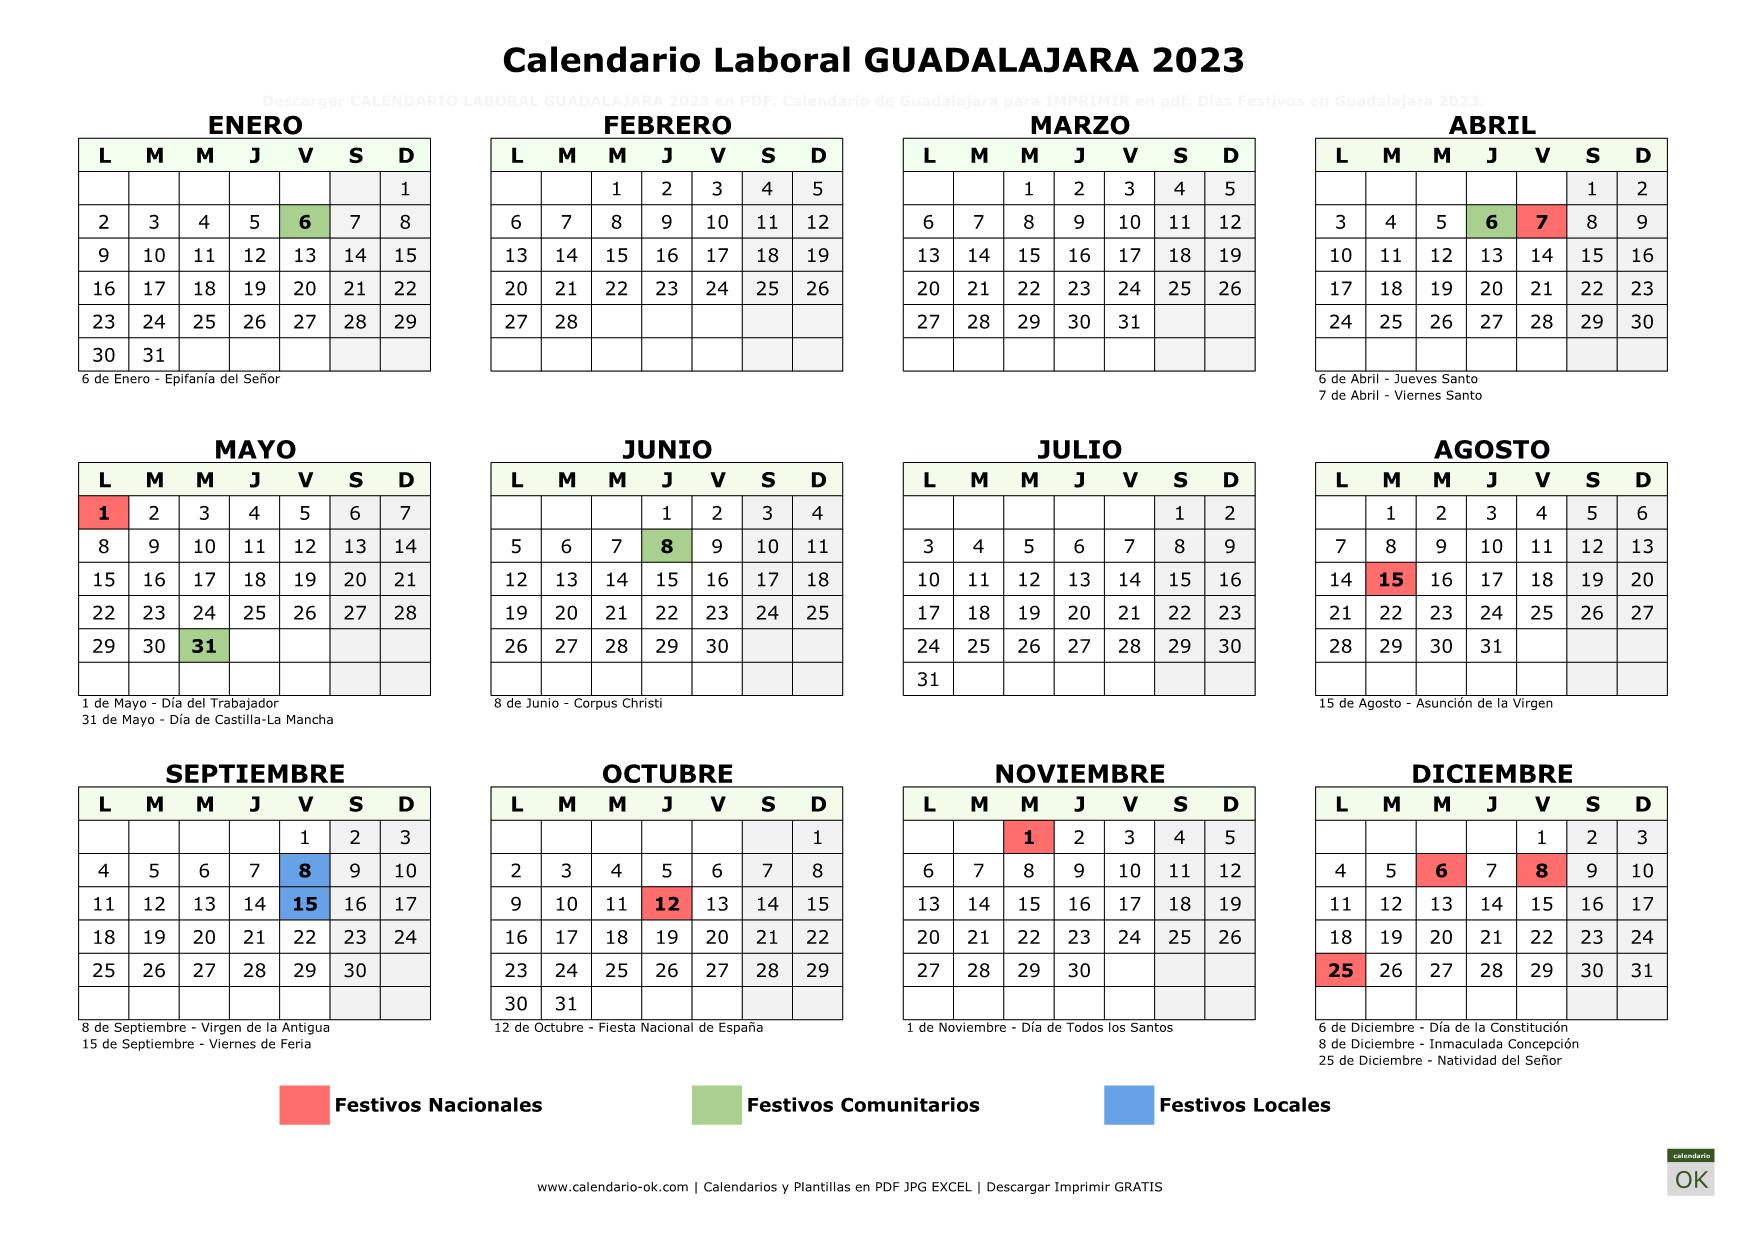 Calendario Laboral Guadalajara 2023 horizontal